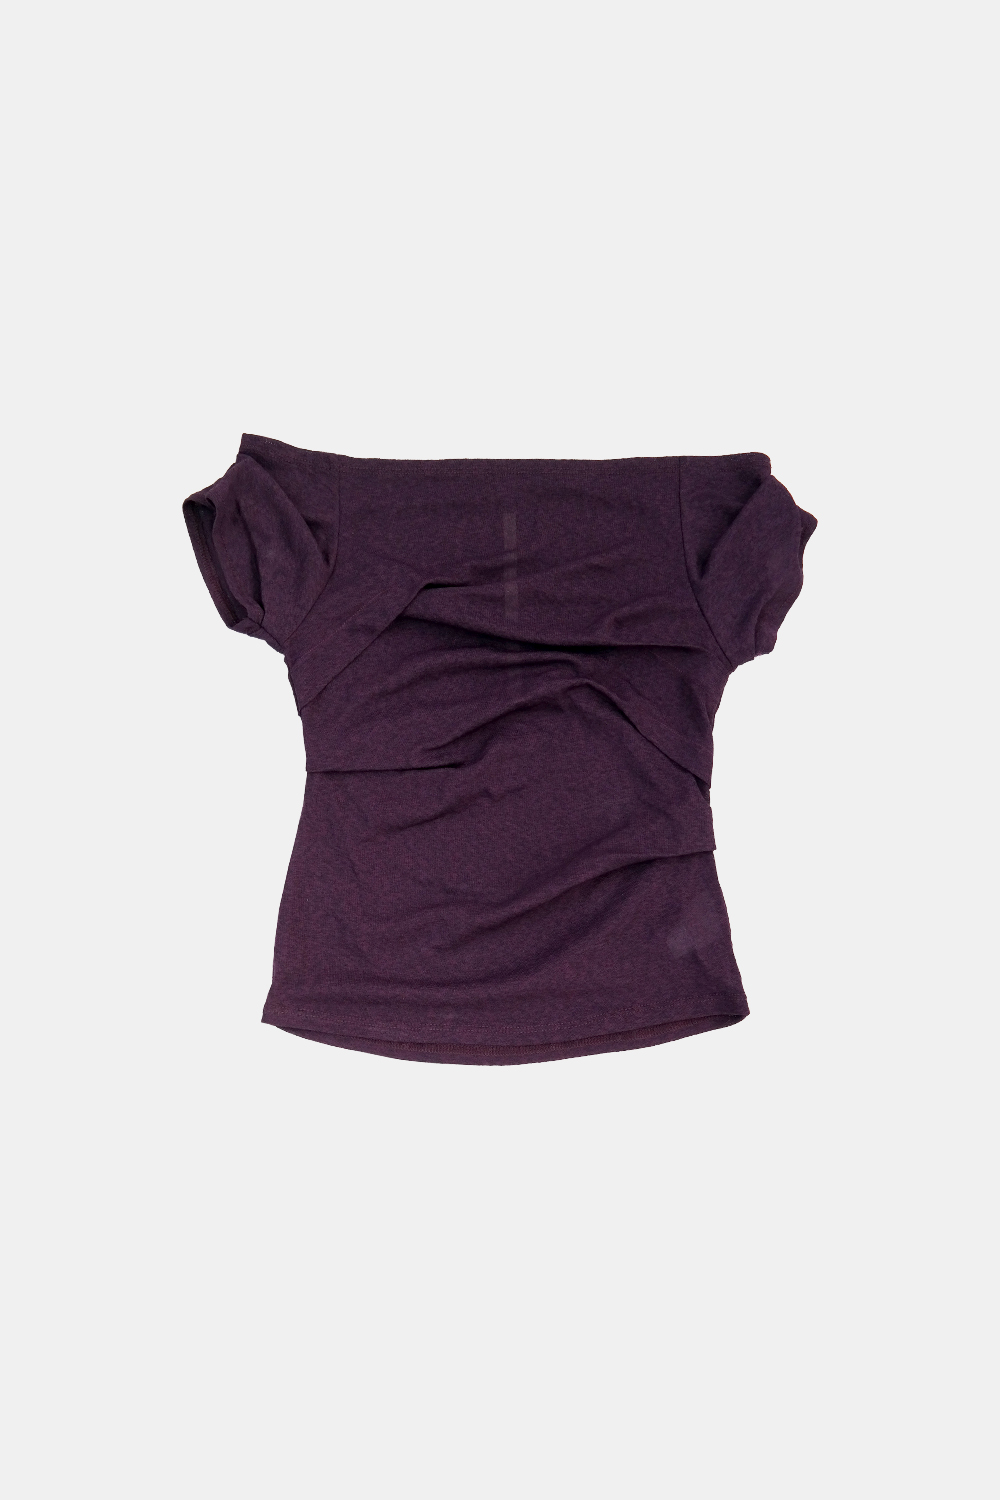 [5/7 예약배송] draping off-shoulder top (purple)